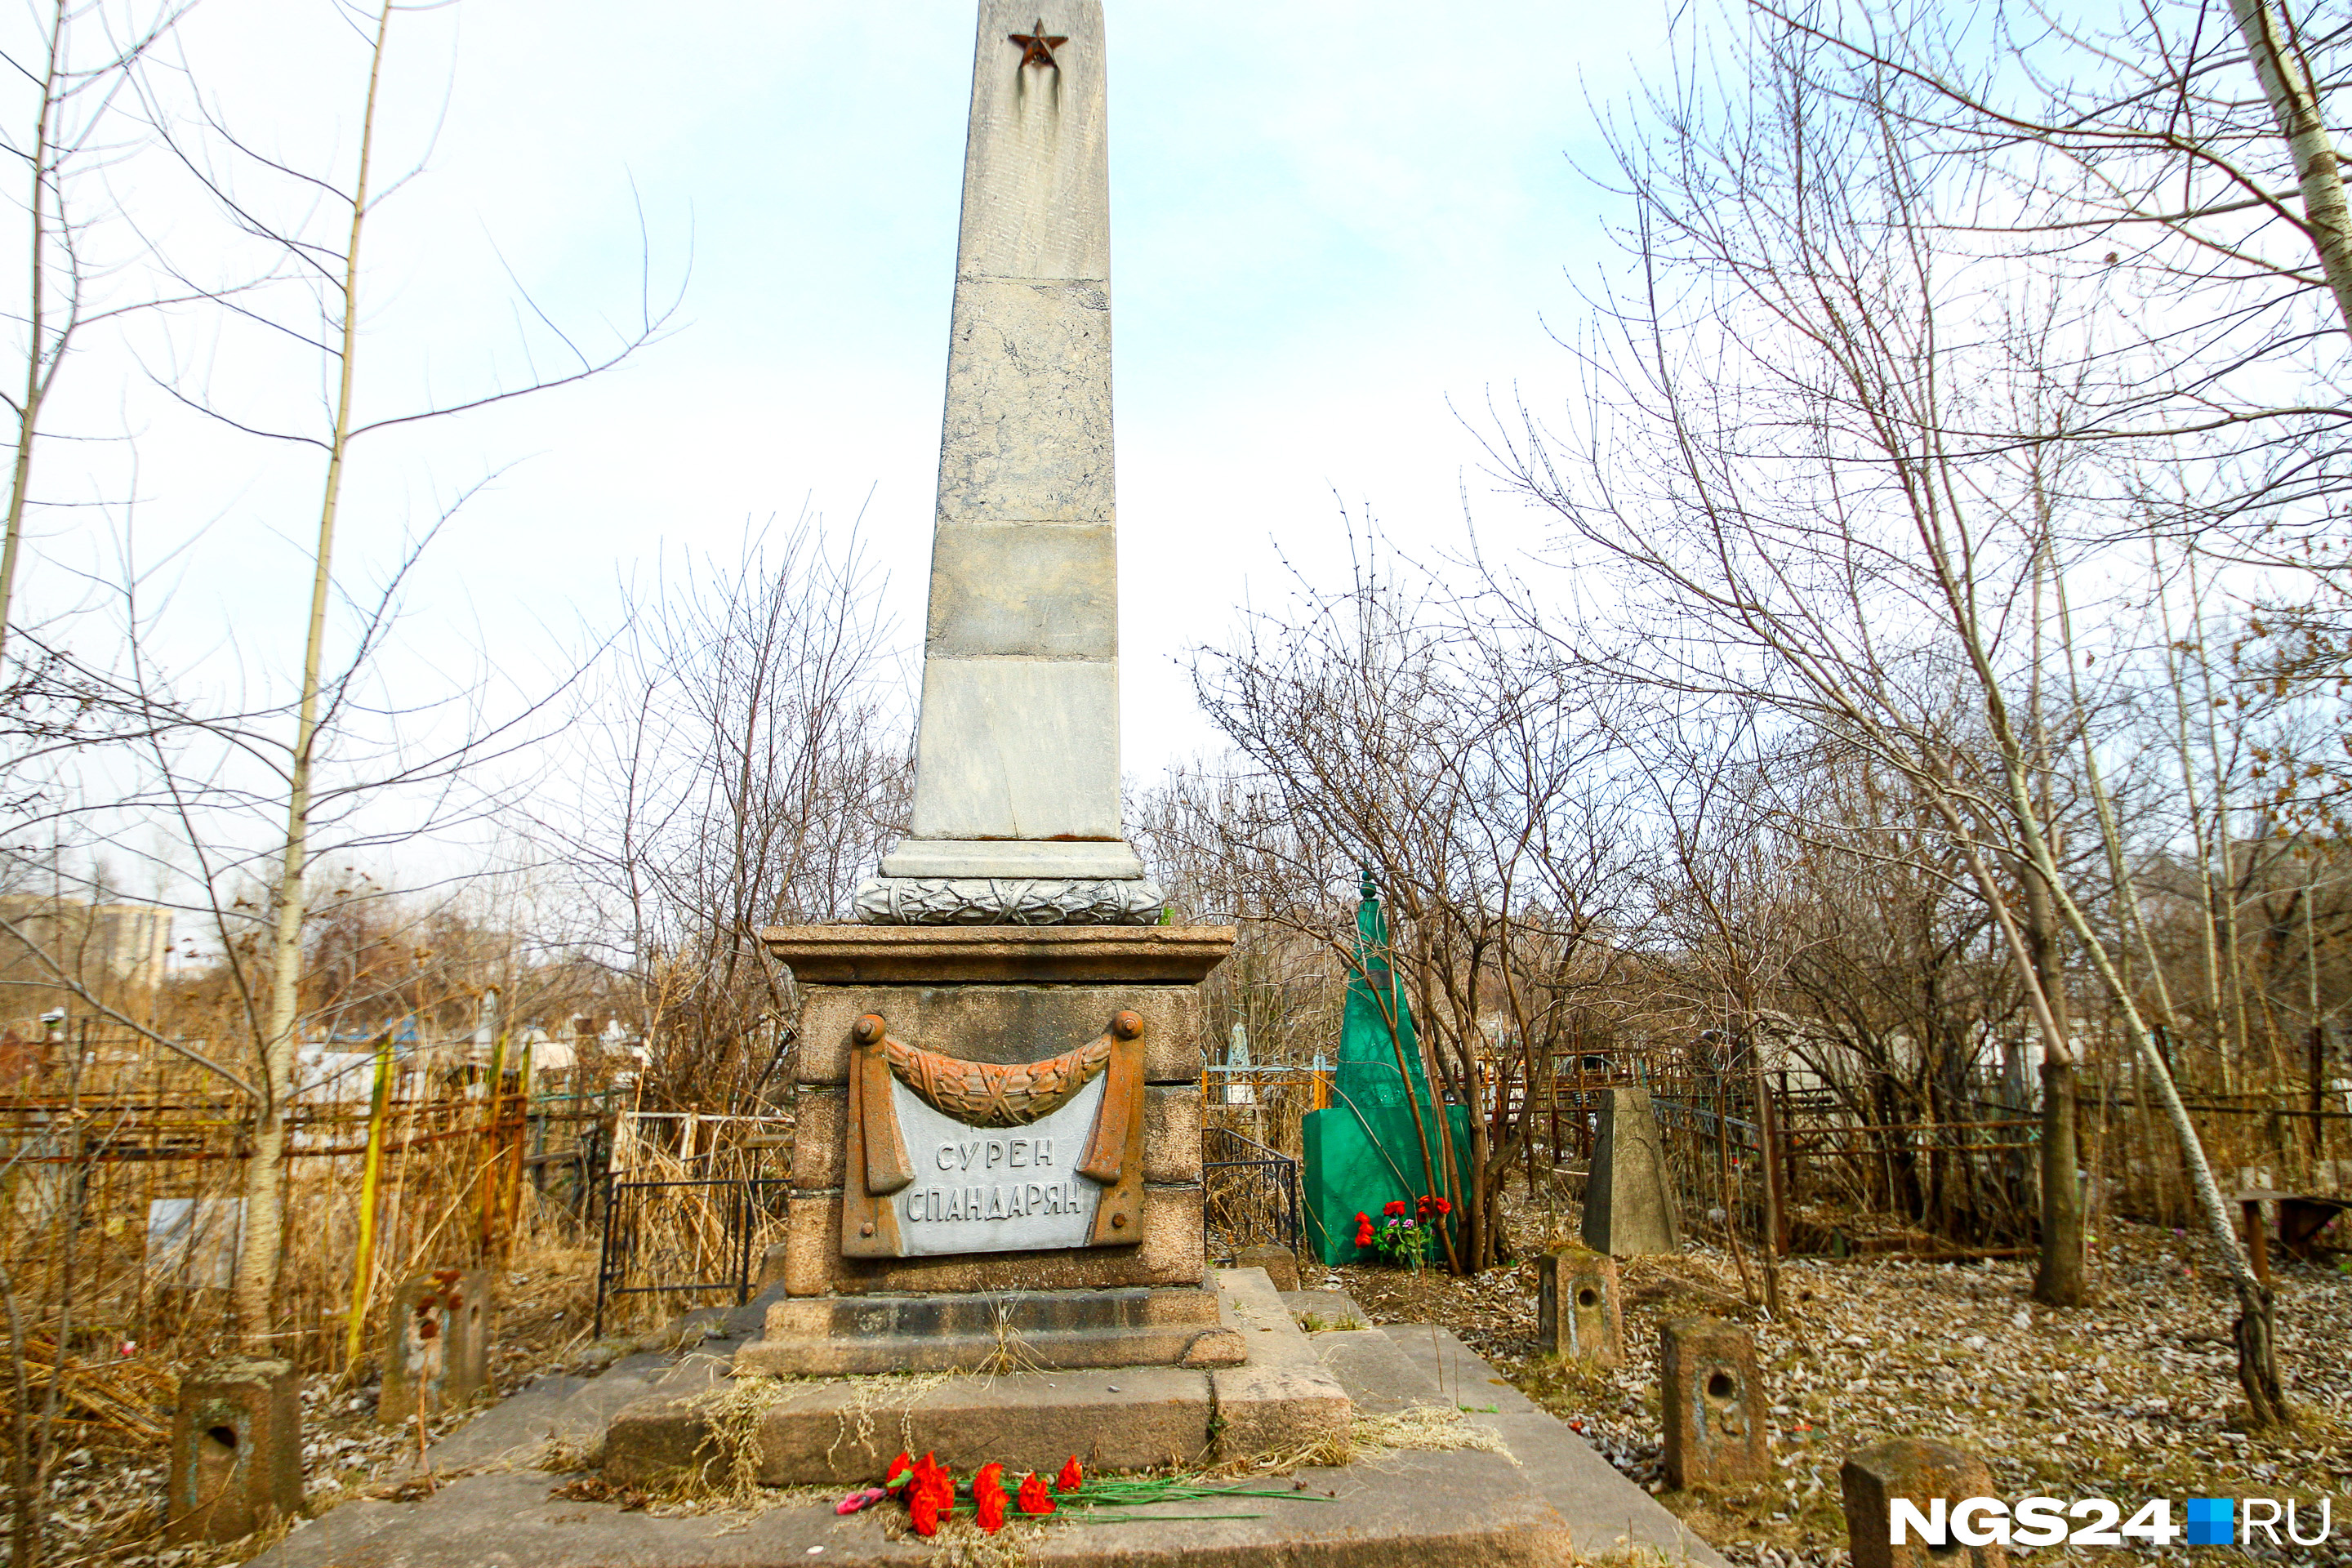 Монумент революционеру, в честь которого в Красноярске названа целая улица, виден издалека